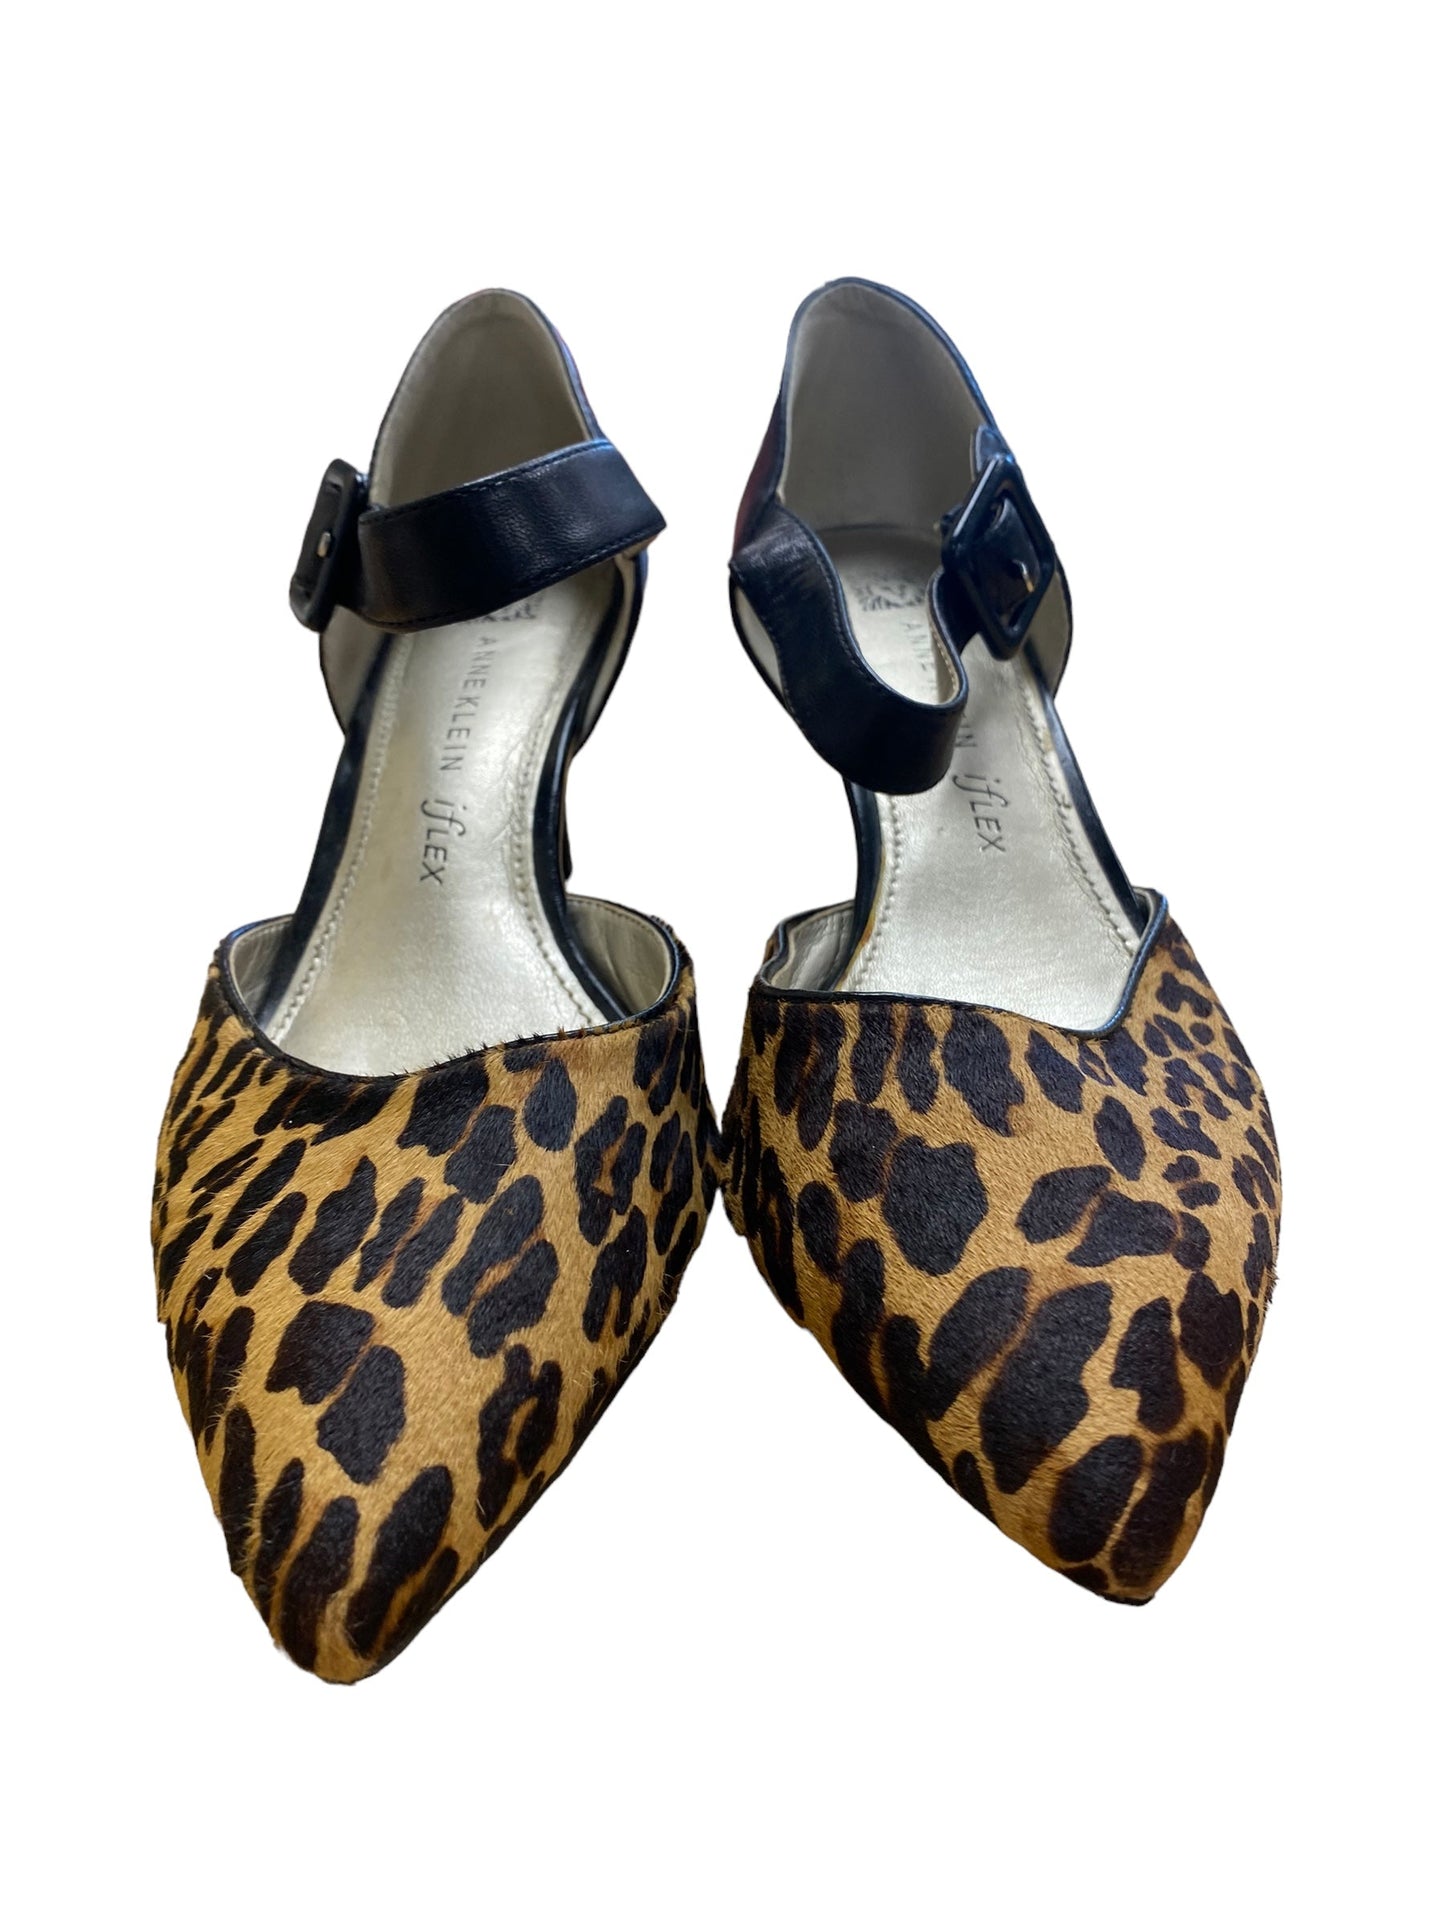 Animal Print Shoes Heels Stiletto Anne Klein, Size 8.5